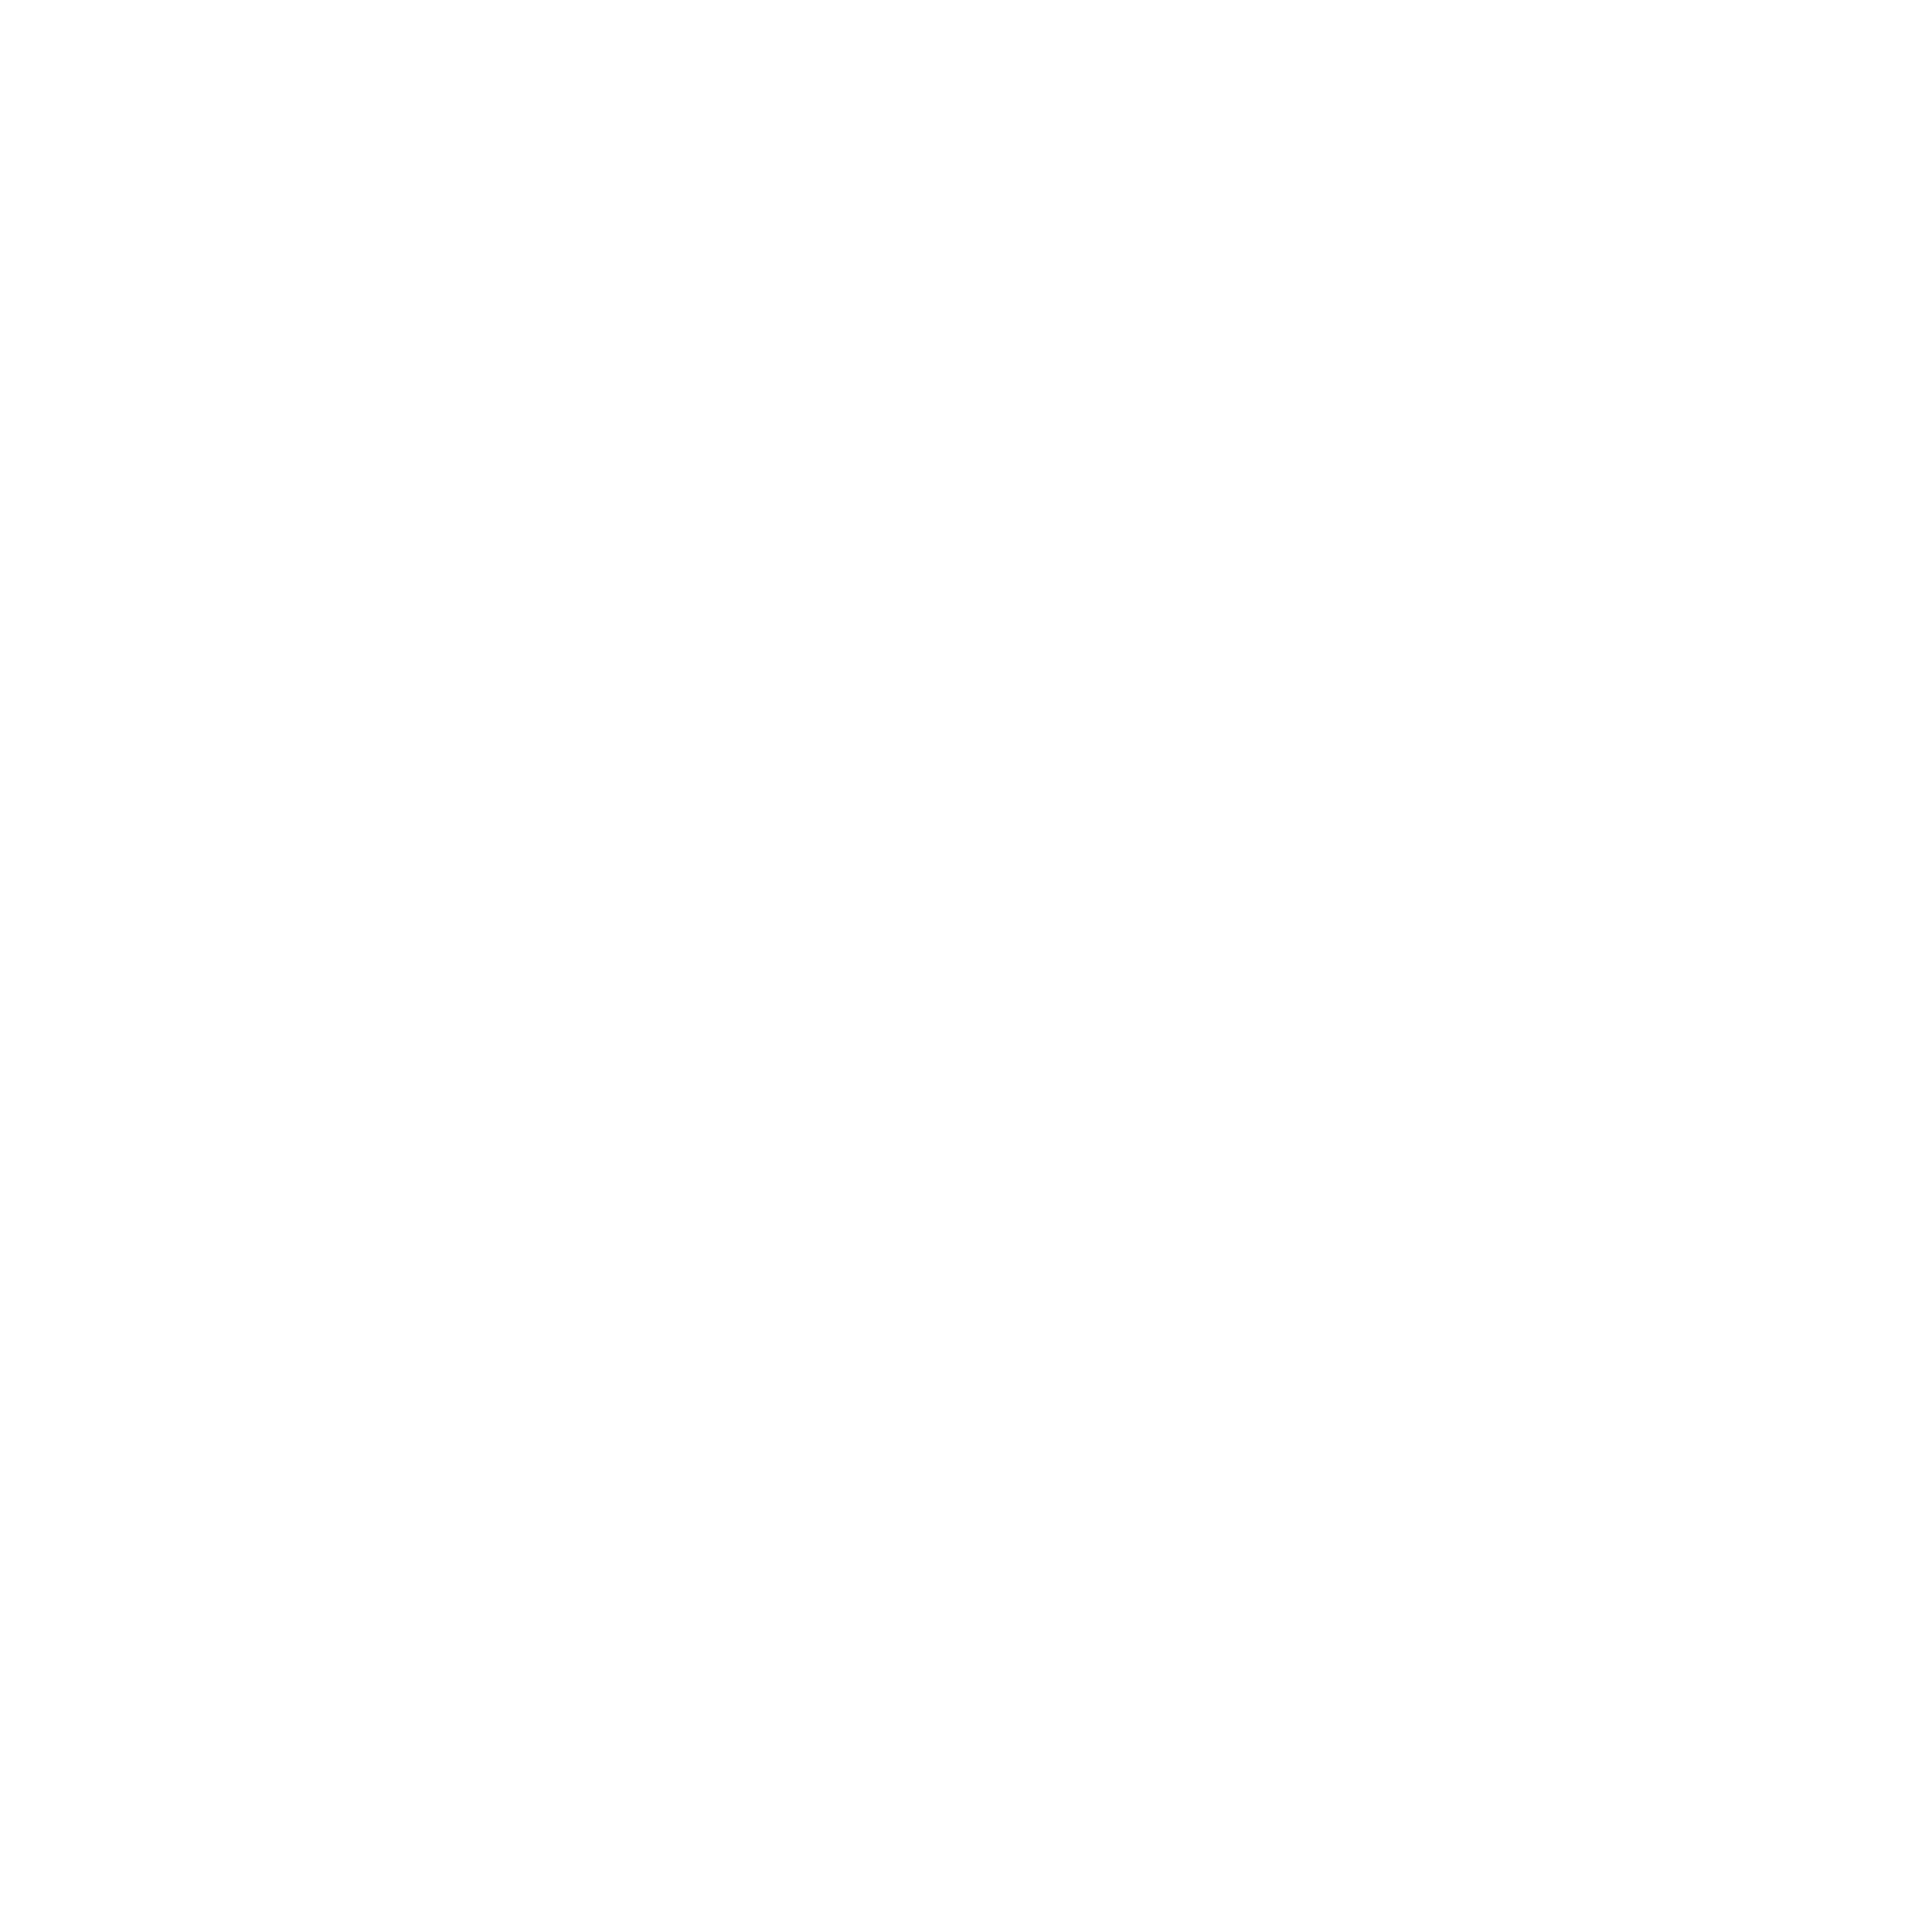 VanMeter Family Farm